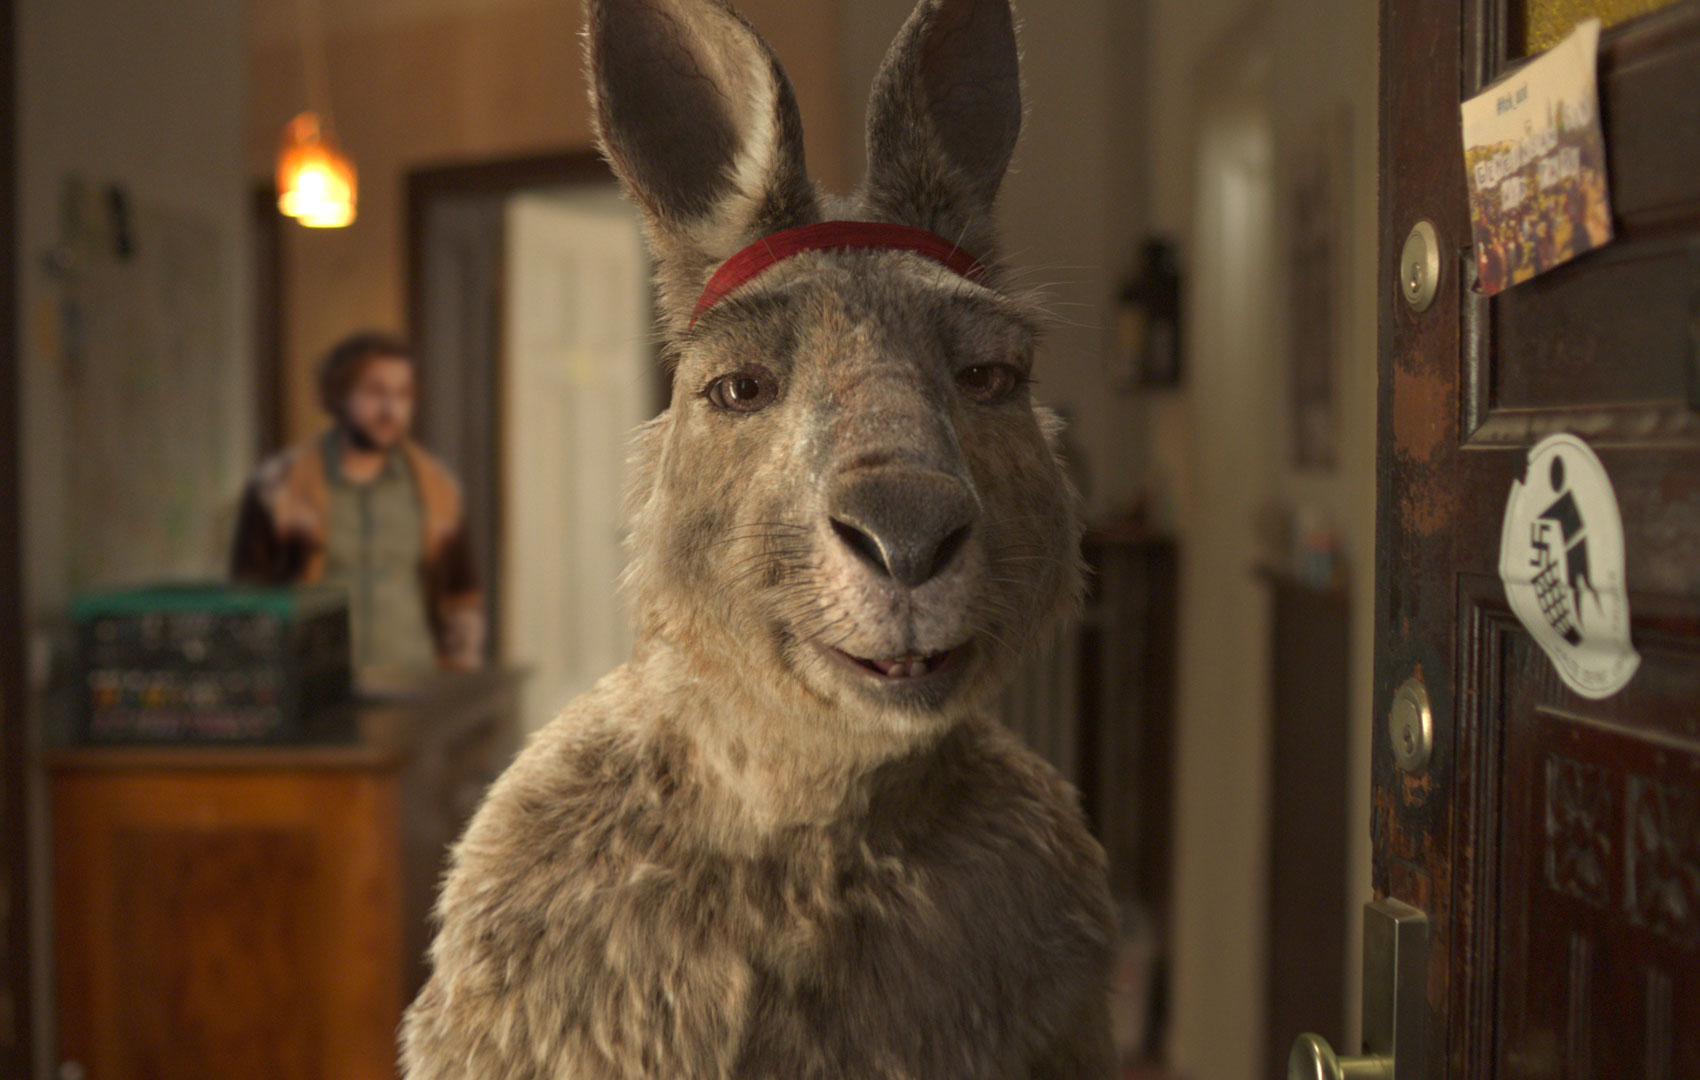 Ein Känguru mit einem roten Stirnband steht in einer offenen Wohnungstür und schaut direkt in die Kamera.